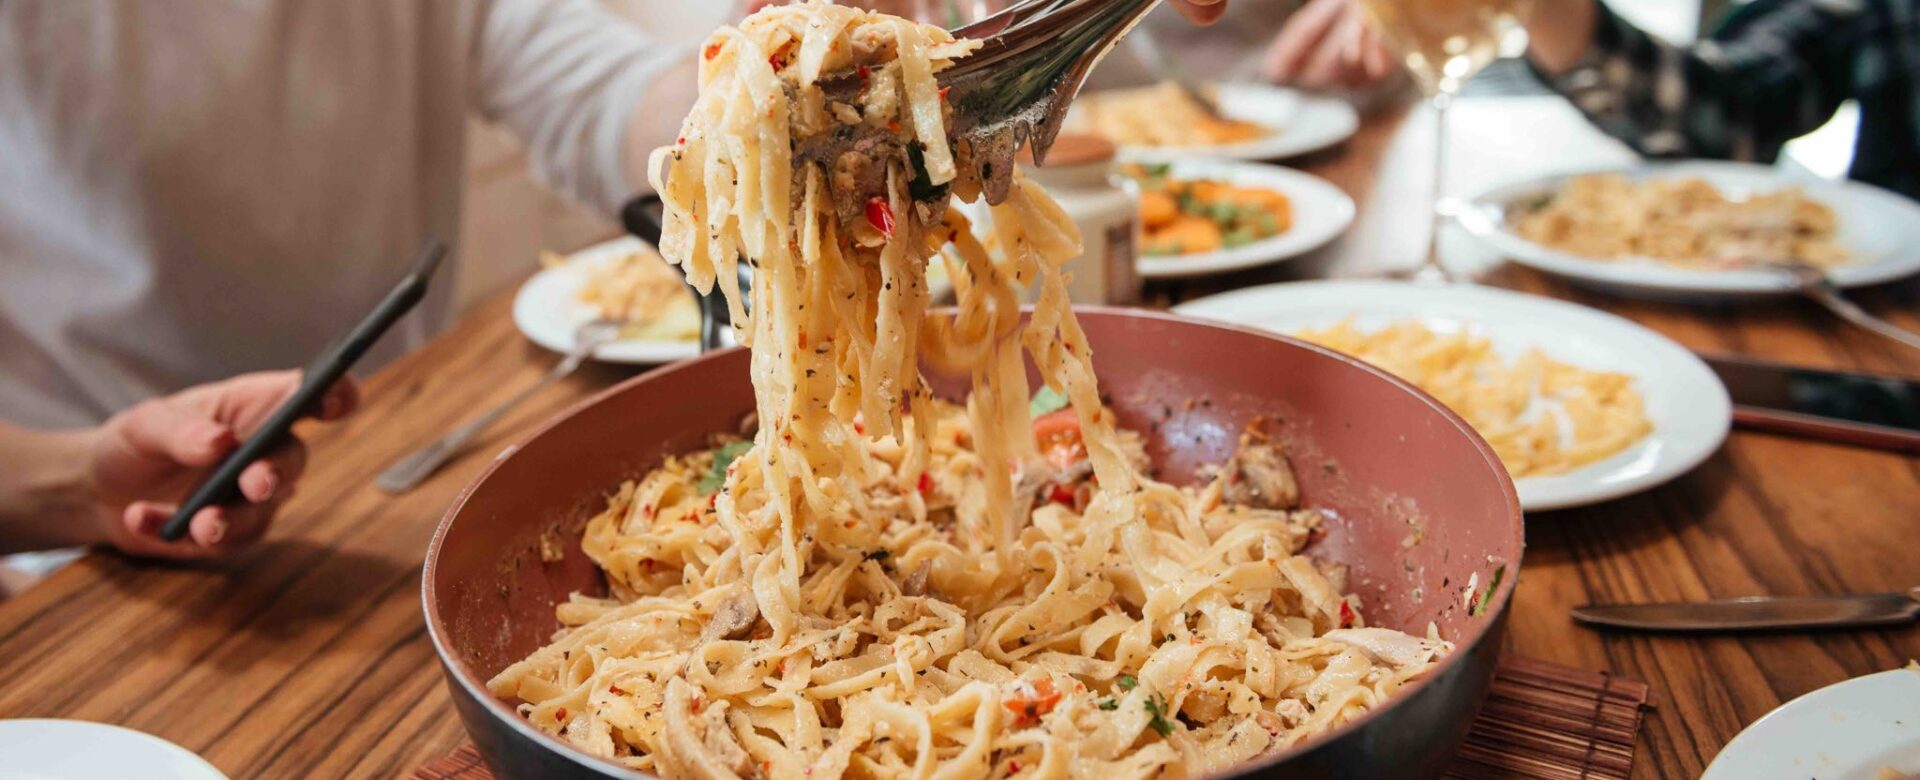 Is pasta een voorgerecht in Italië